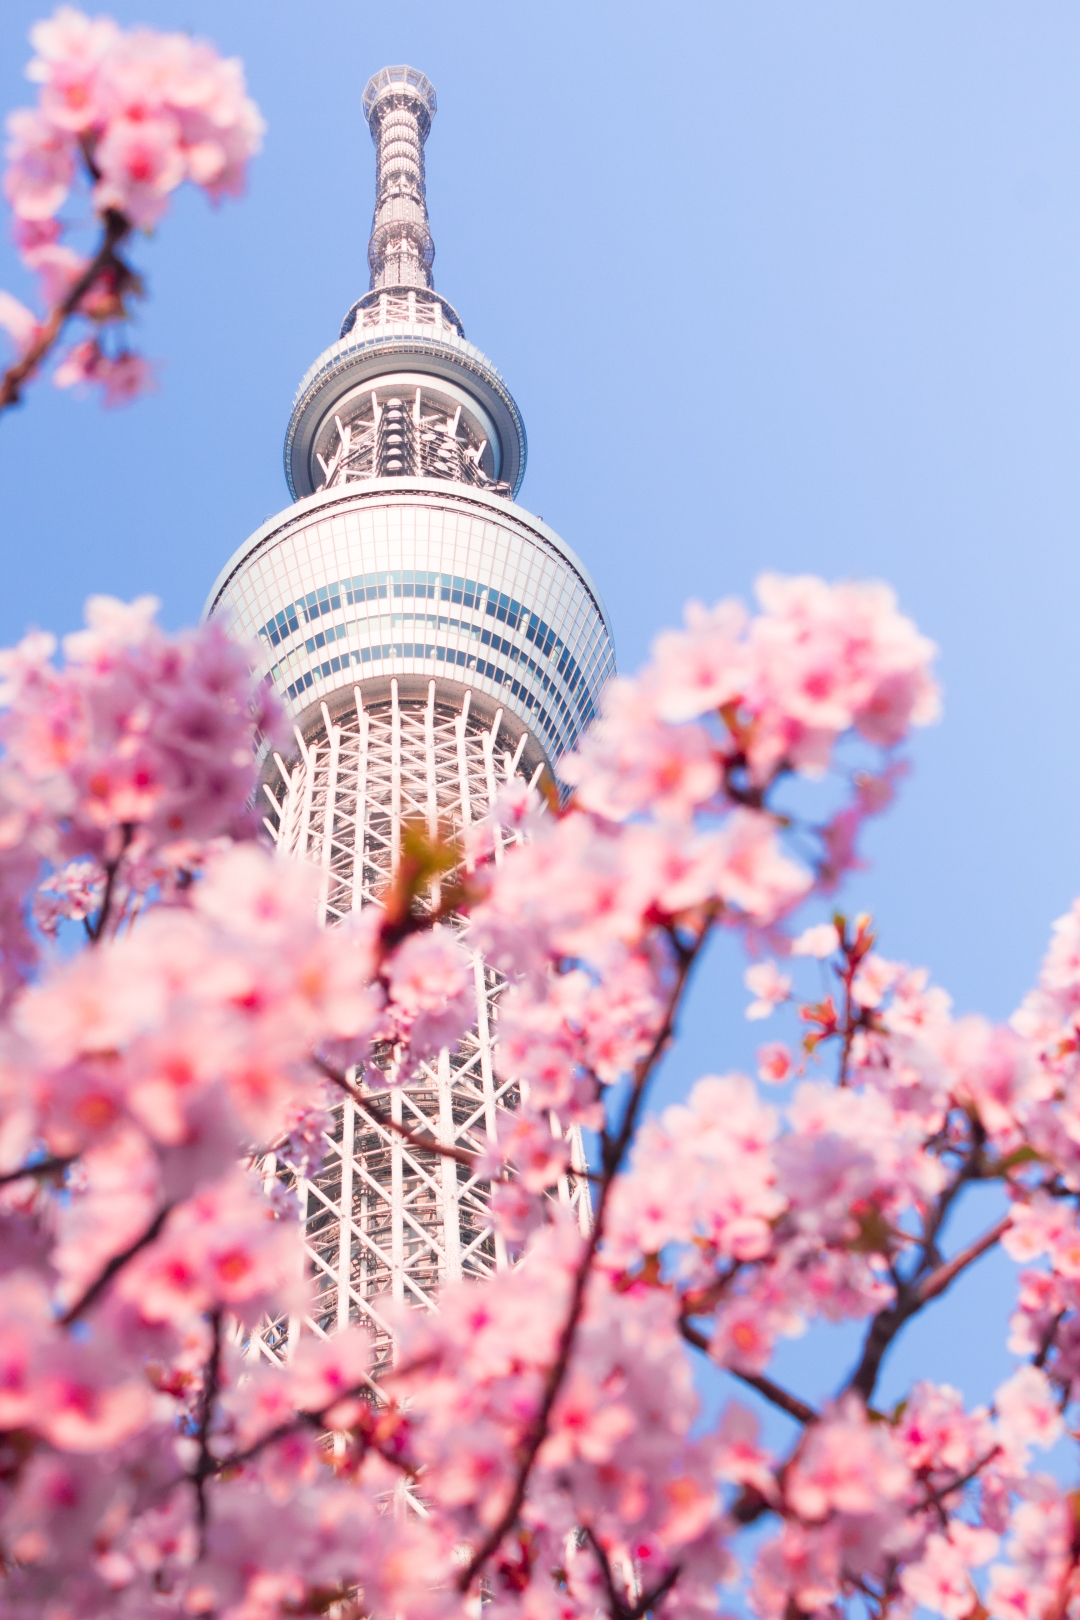 Če načrtujete potovanje na Japonsko, se odpravite spomladi – cvetlični prizori jo naredijo resnično posebno